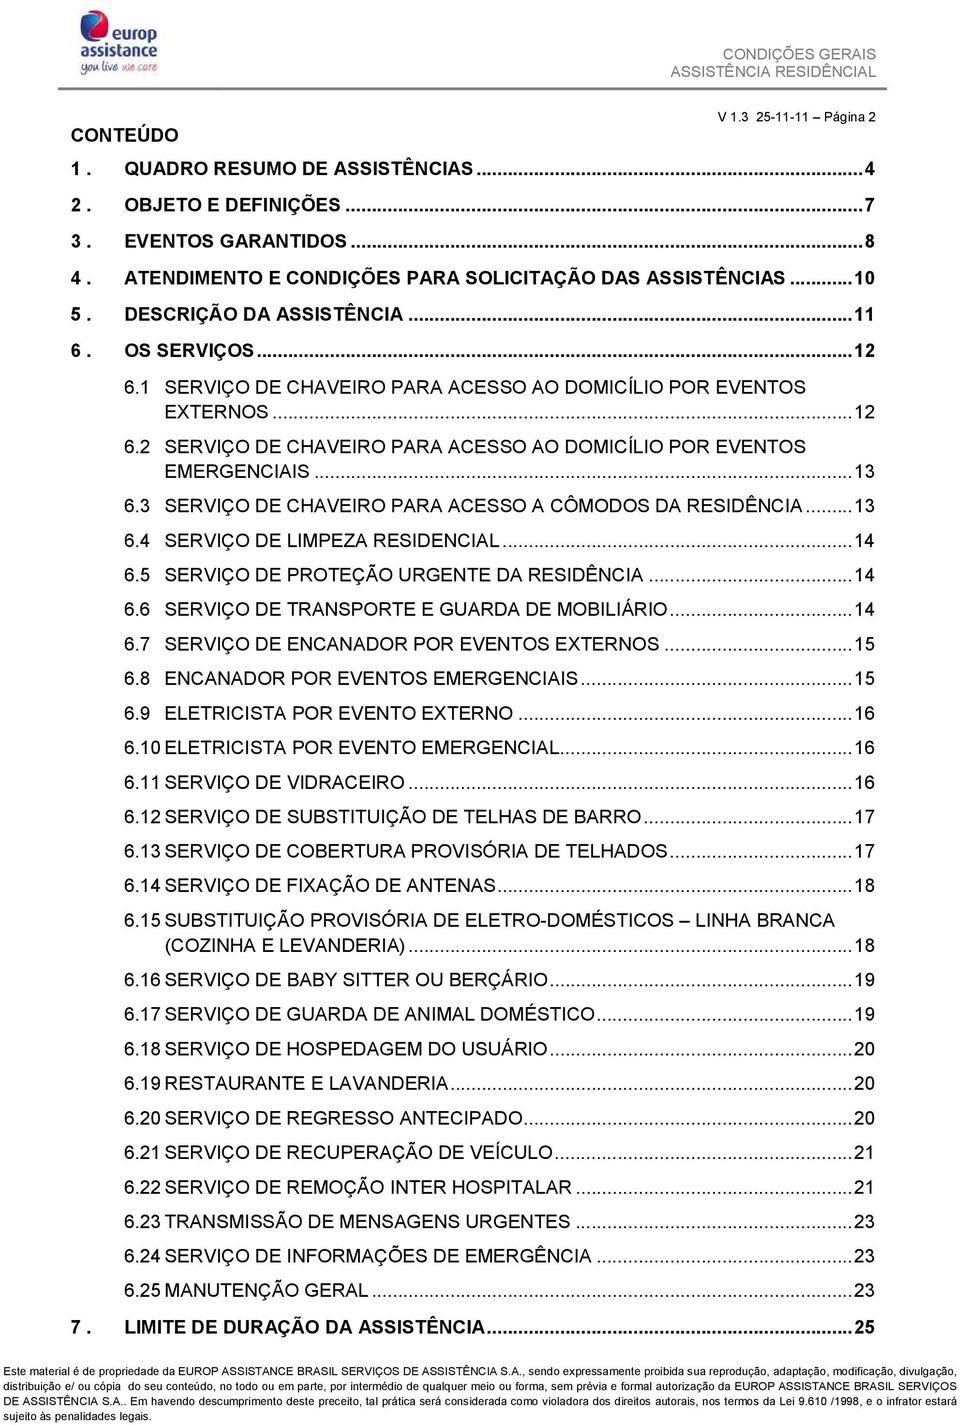 .. 13 6.3 SERVIÇO DE CHAVEIRO PARA ACESSO A CÔMODOS DA RESIDÊNCIA... 13 6.4 SERVIÇO DE LIMPEZA RESIDENCIAL... 14 6.5 SERVIÇO DE PROTEÇÃO URGENTE DA RESIDÊNCIA... 14 6.6 SERVIÇO DE TRANSPORTE E GUARDA DE MOBILIÁRIO.